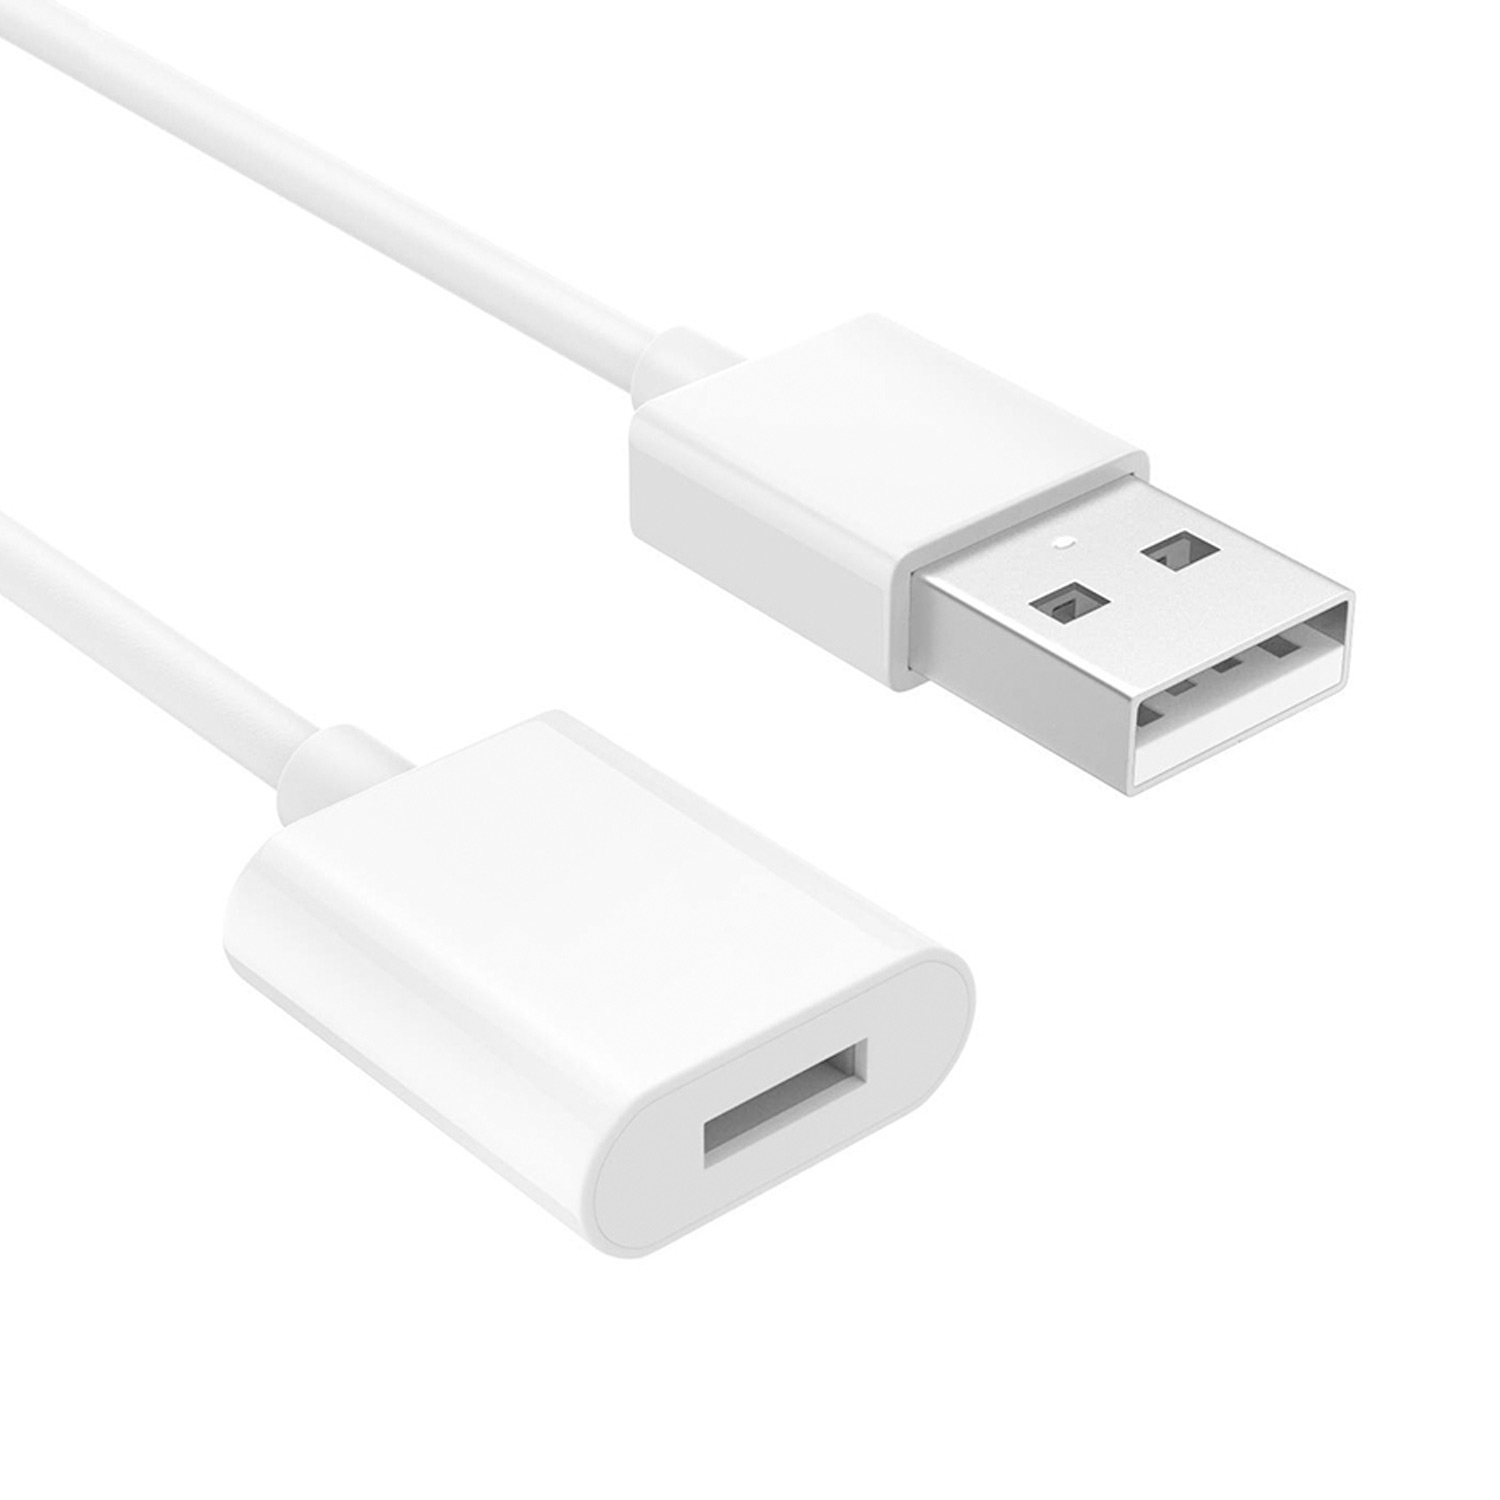 Microsonic USB to Dişi Lightning iPhone Kablo Apple Pencil için USB Şarj Kablosu Beyaz